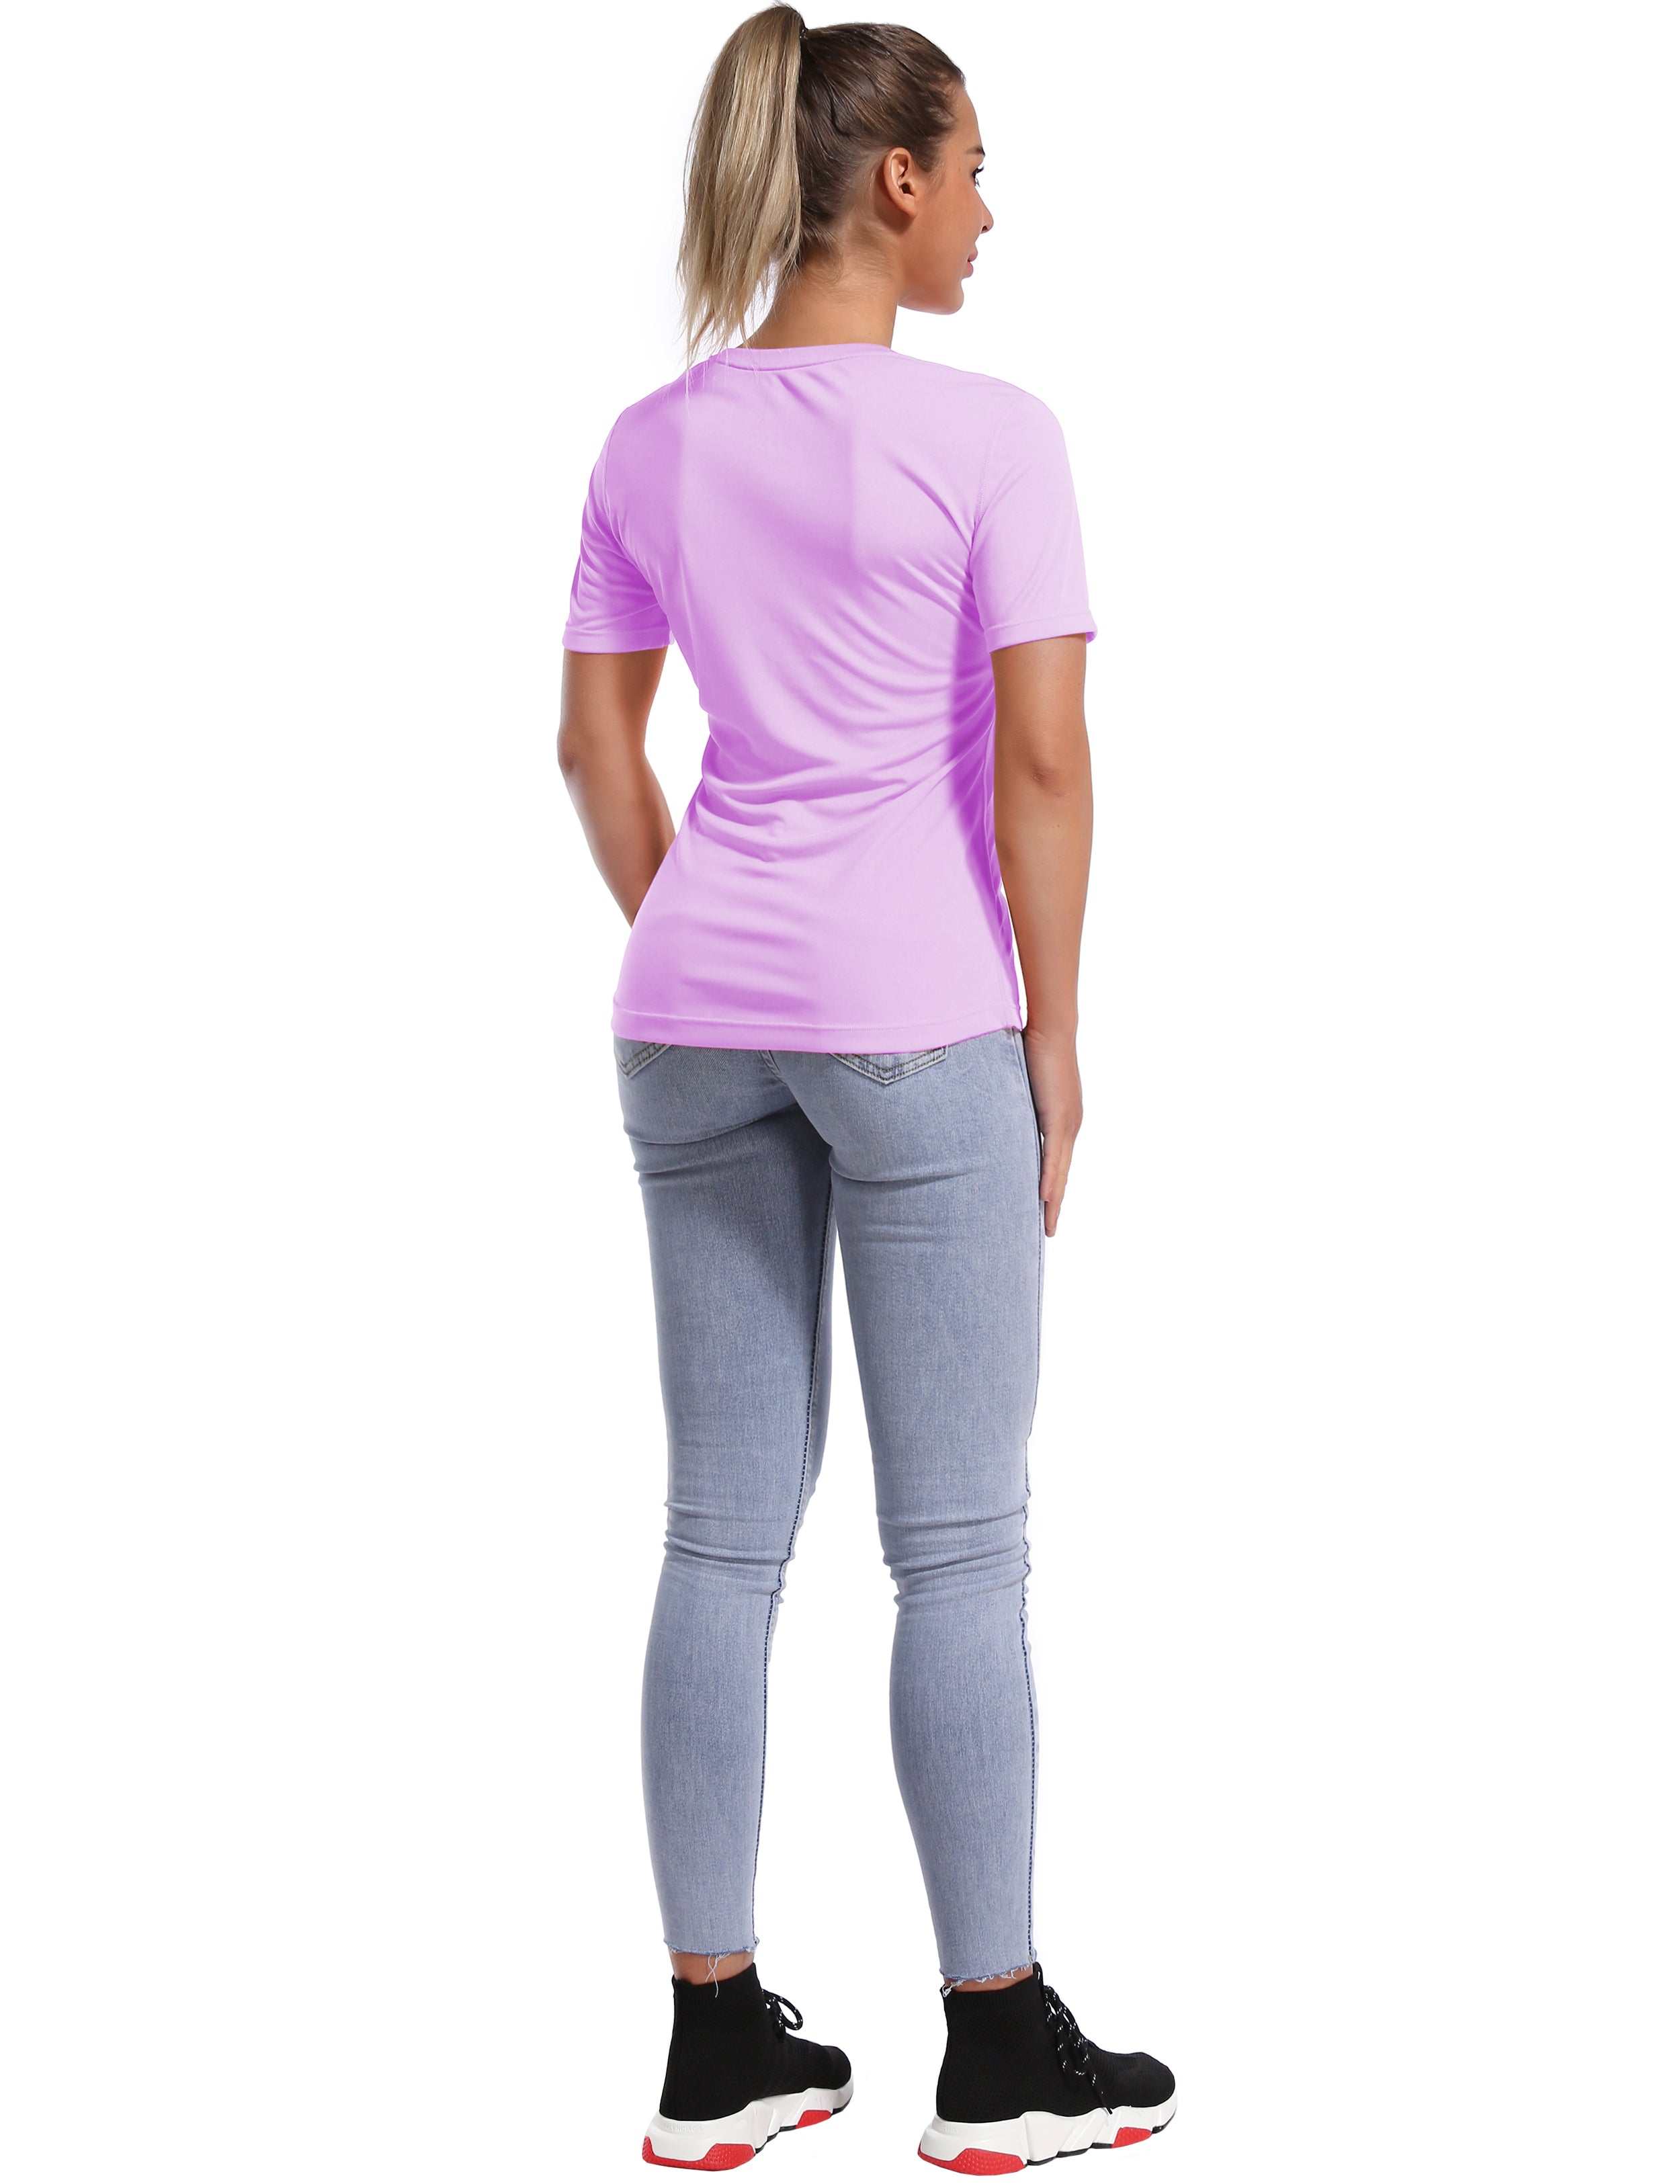 Short Sleeve Athletic Shirts purple